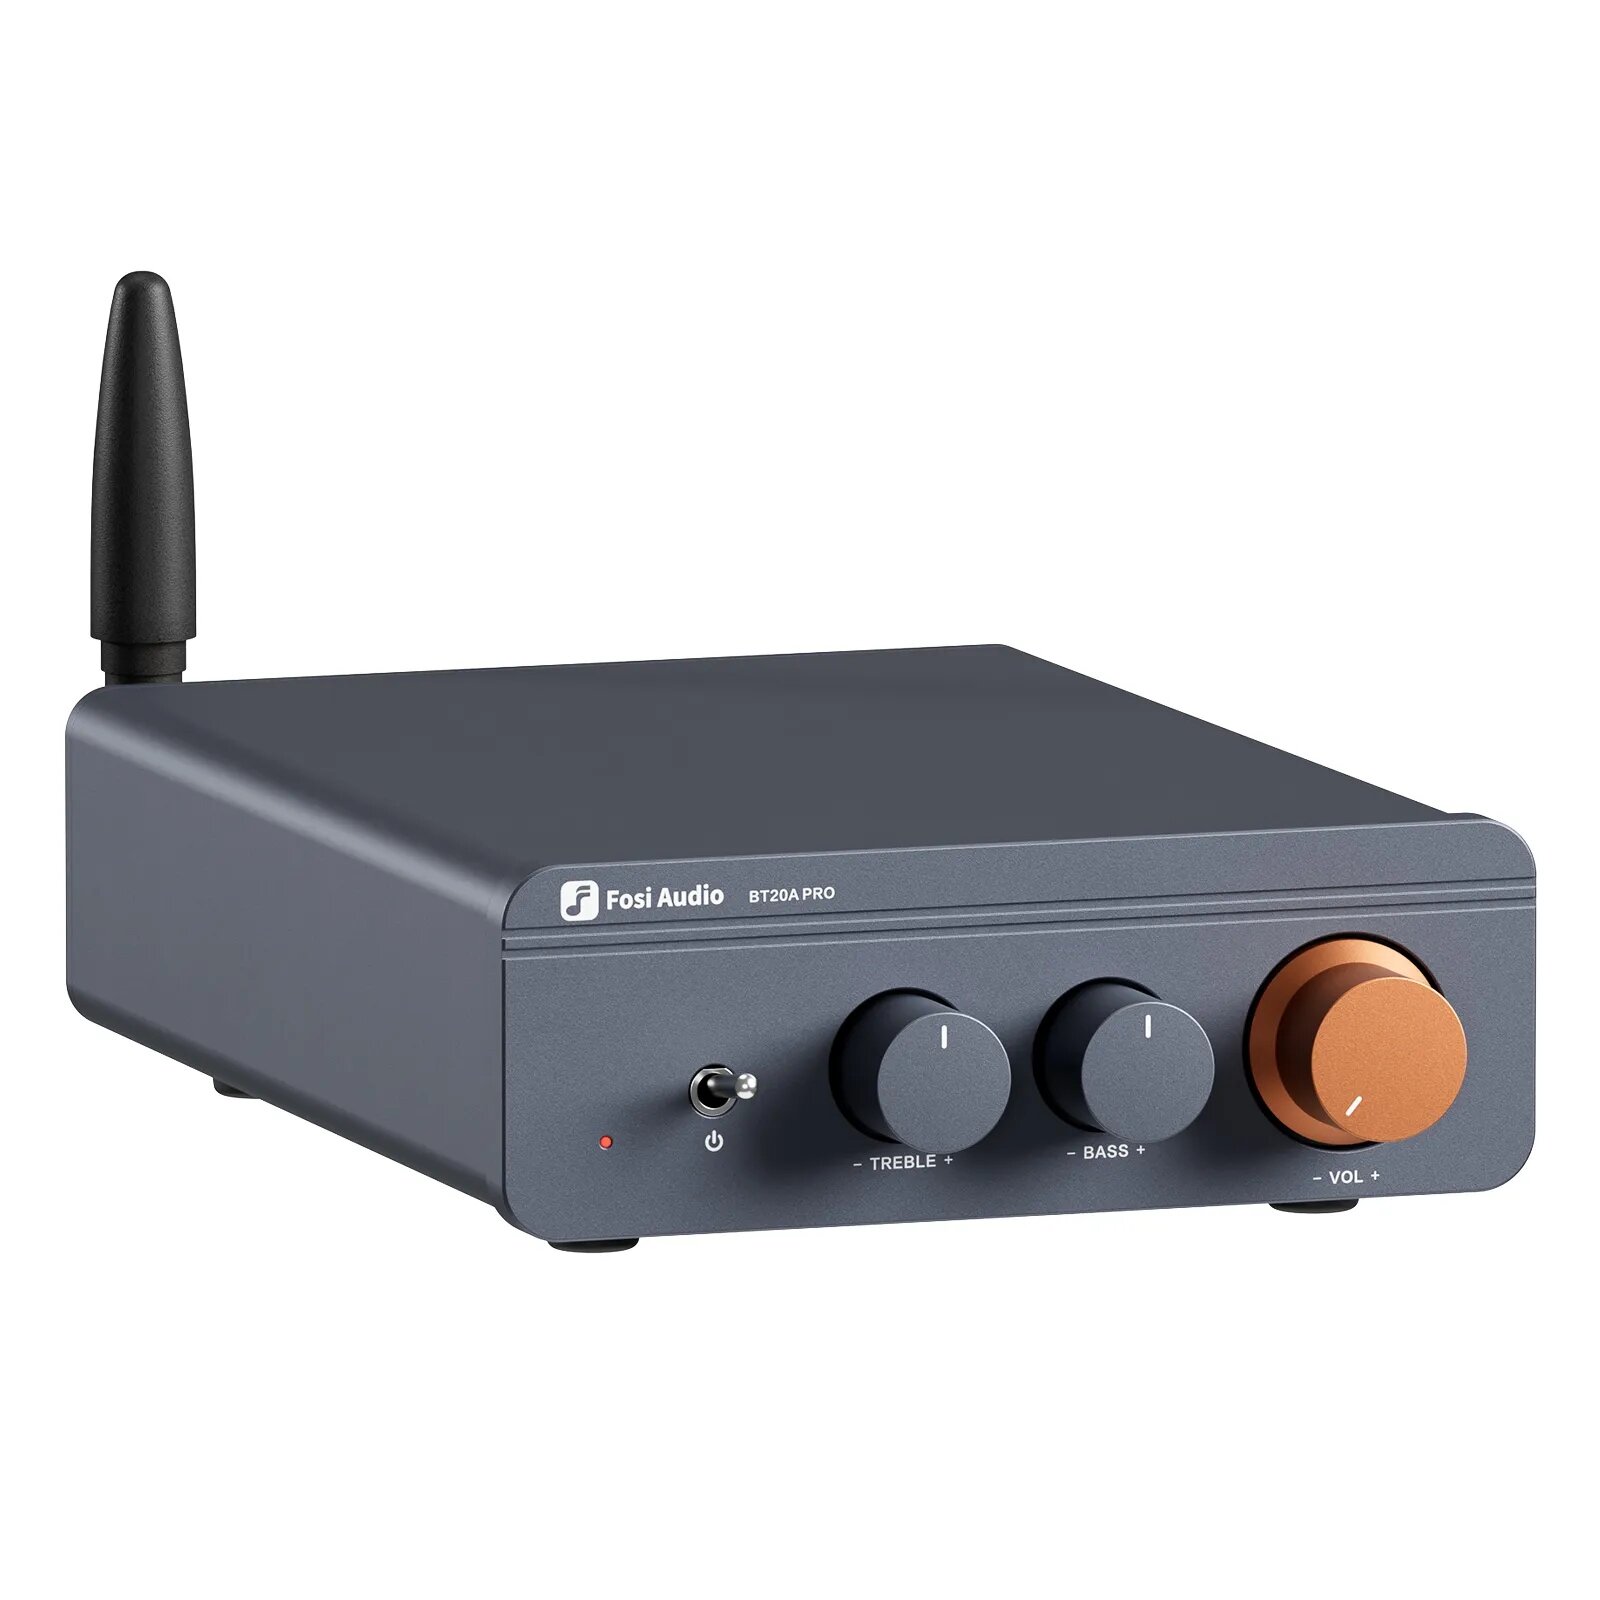 Усилитель для колонок Fosi Audio BT20A Pro 300 Вт, с блоком питания 48В/5А